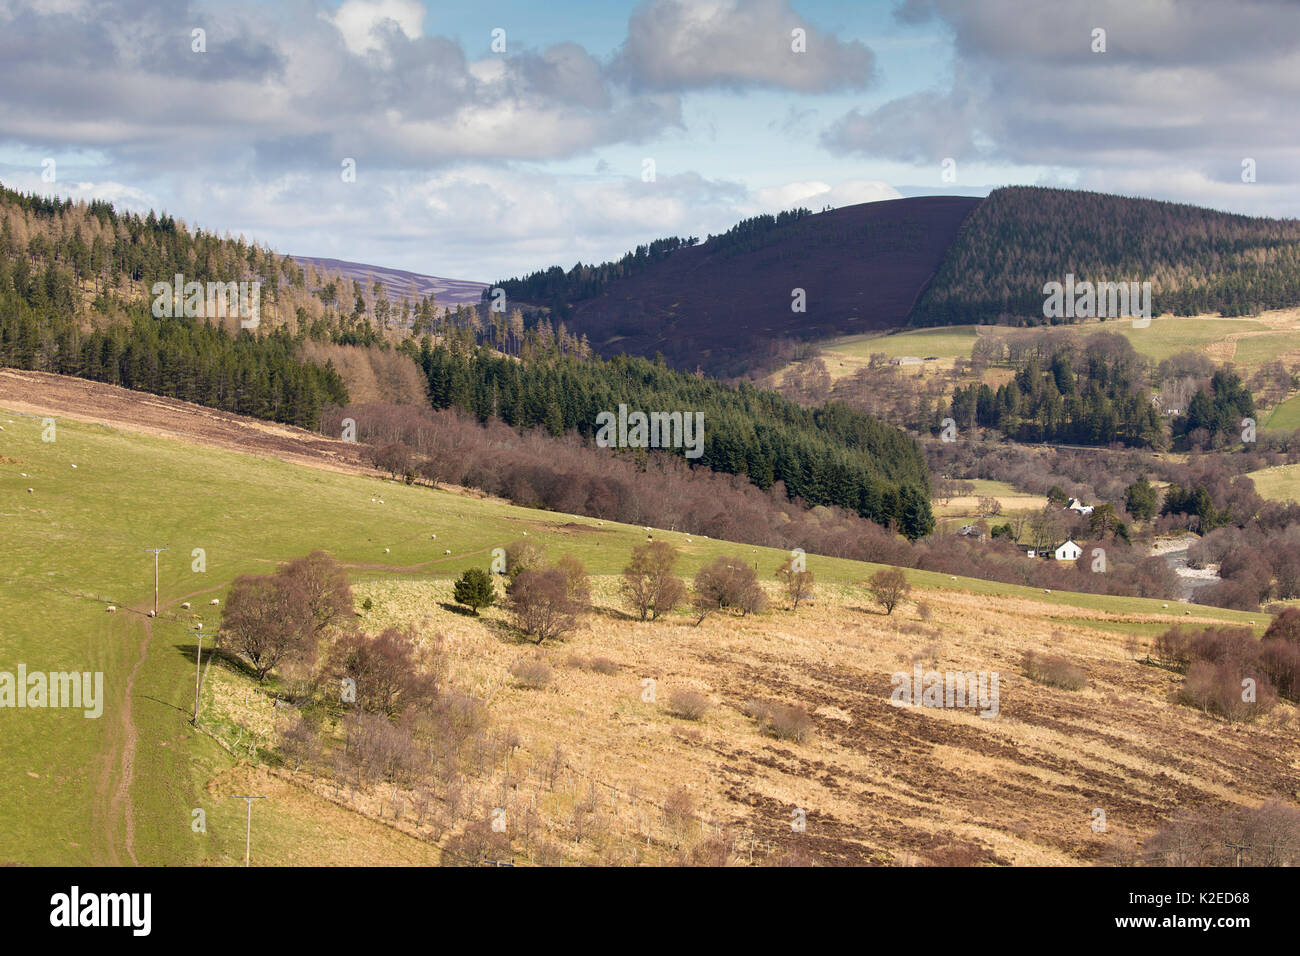 Gemischte Lebensraum der gewerblichen Forstwirtschaft, Schaf, Weide und natürliche Wälder, Glenlivet, Northern Scotland, UK, April 2016. Stockfoto